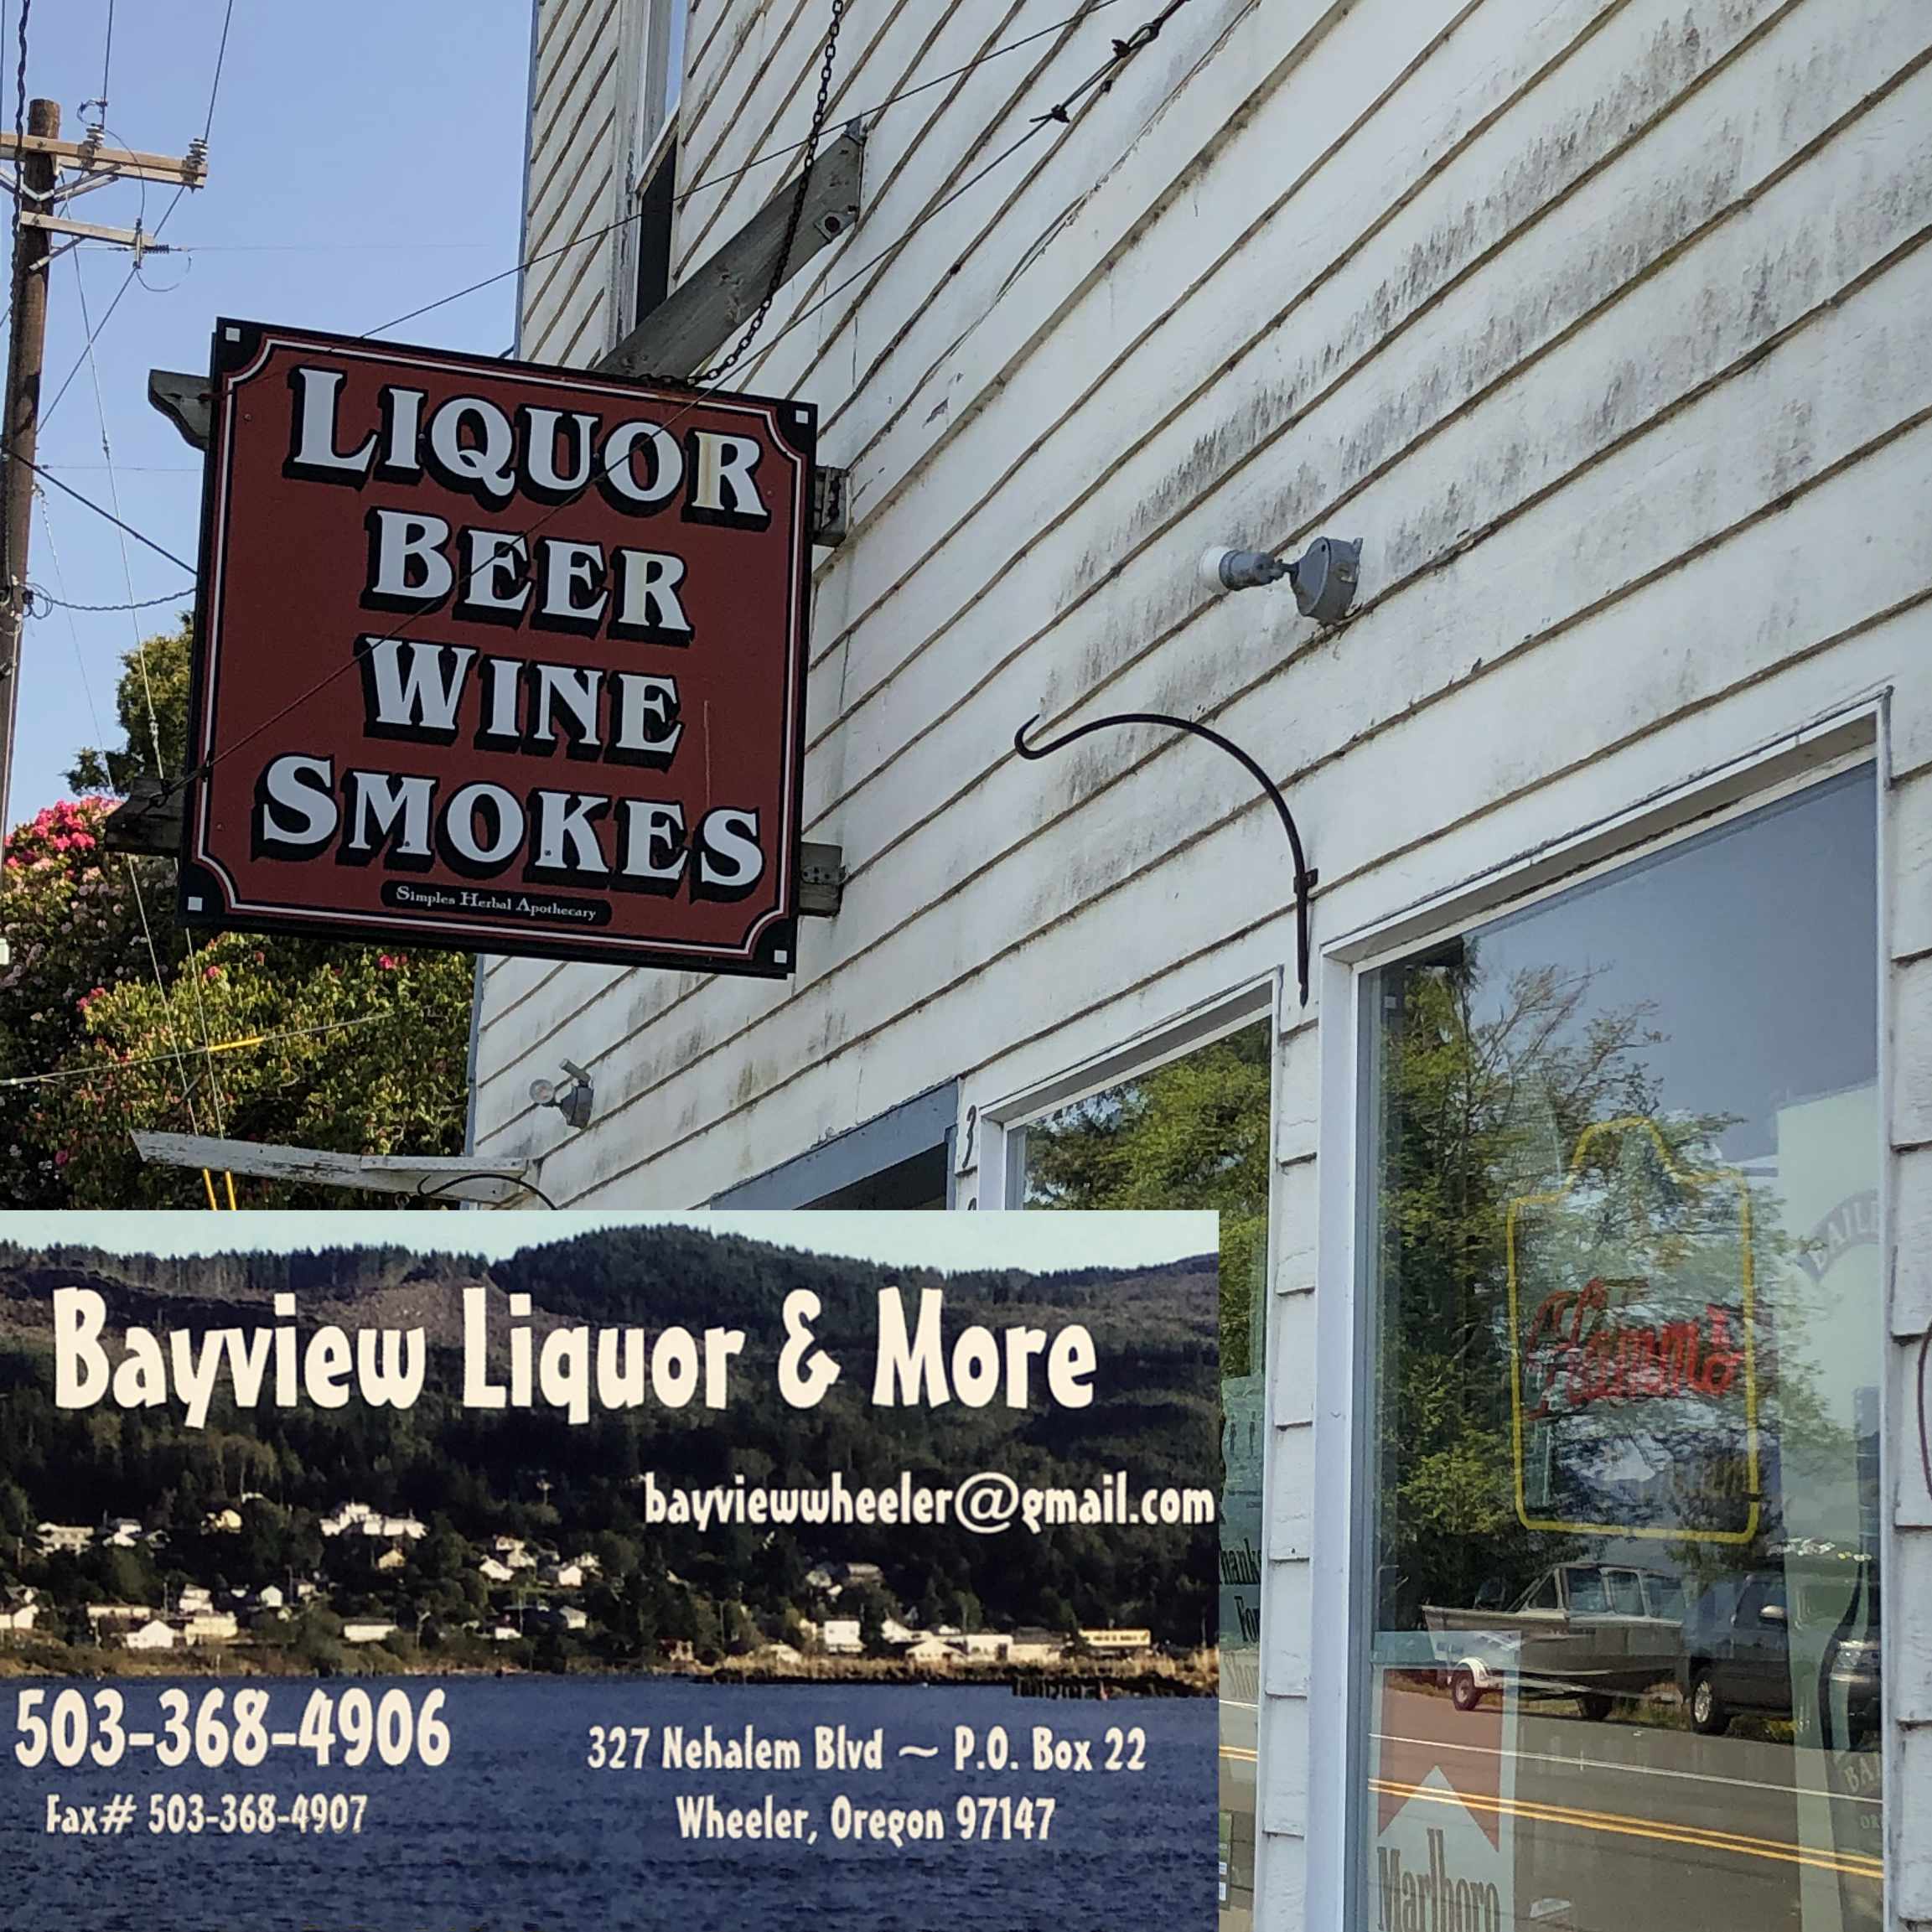 Bayview Liquor & More